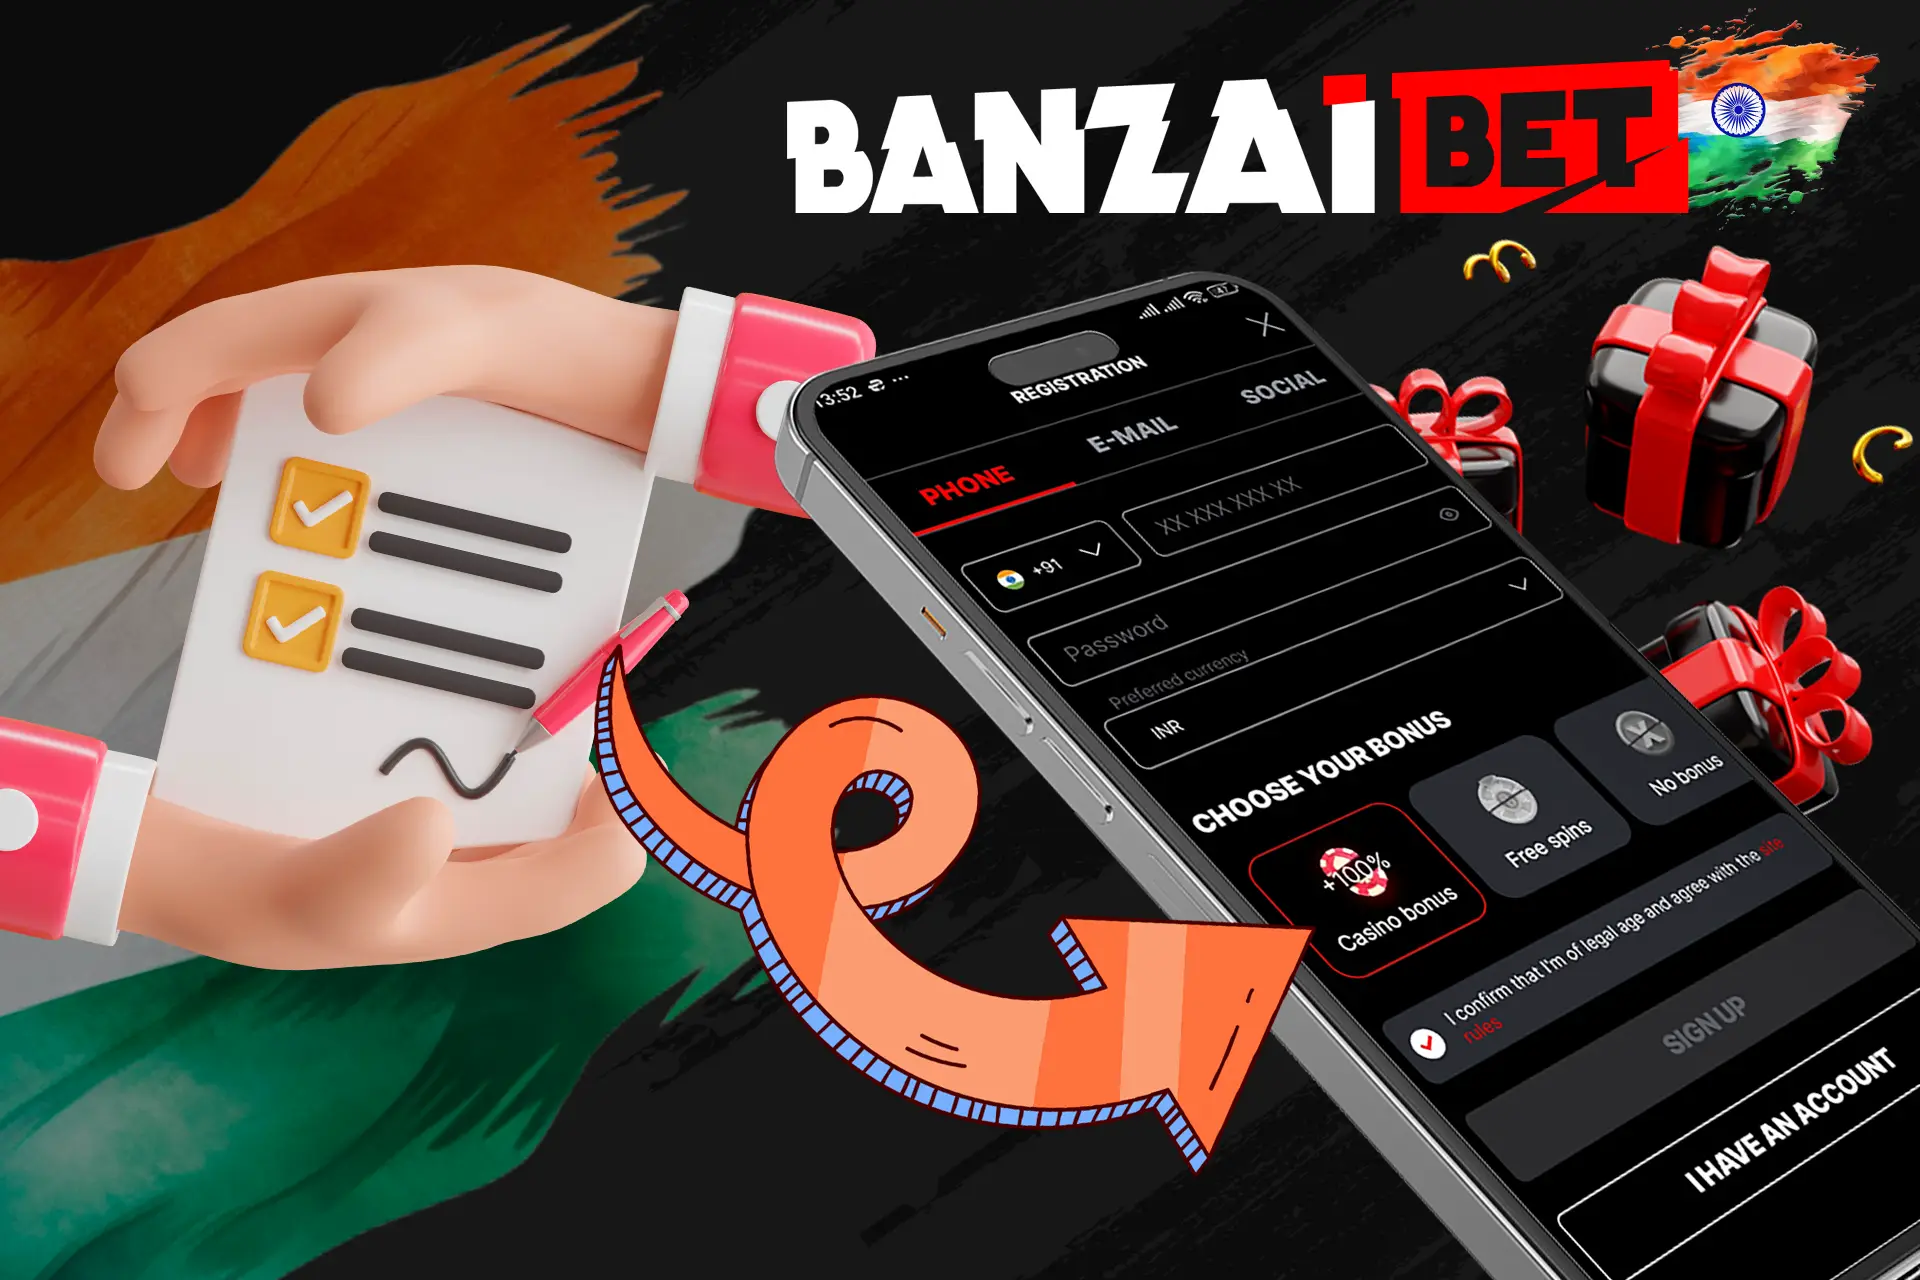 Register and get a bonus at Banzaibet India